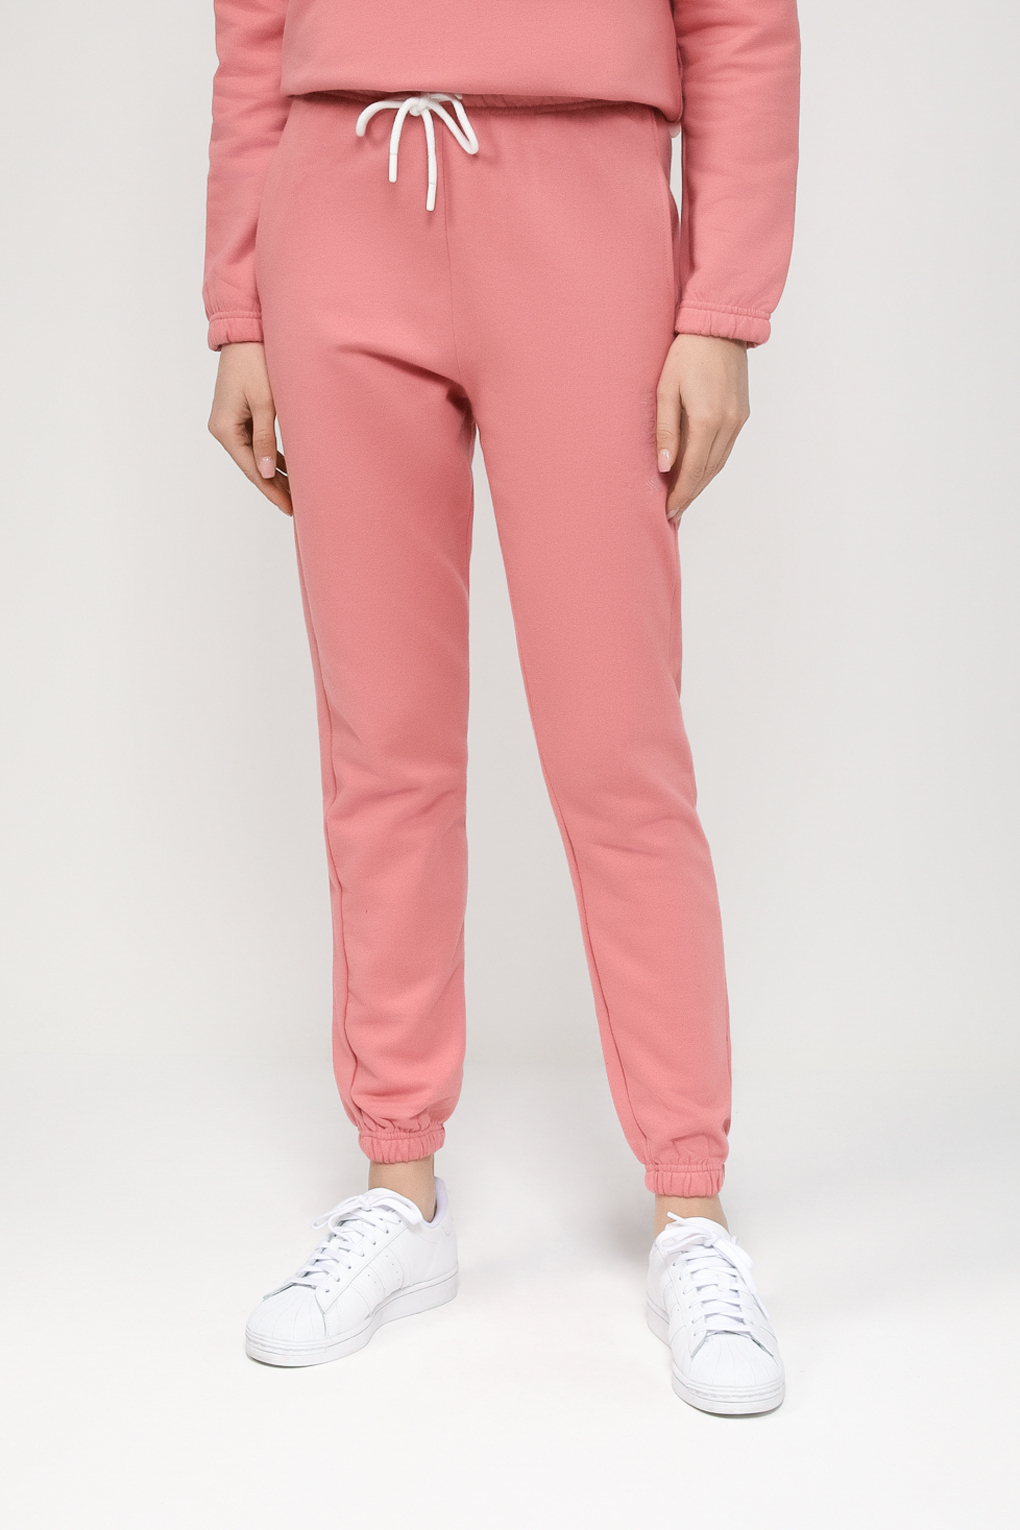 Спортивные брюки женские Massana P733201 розовые L